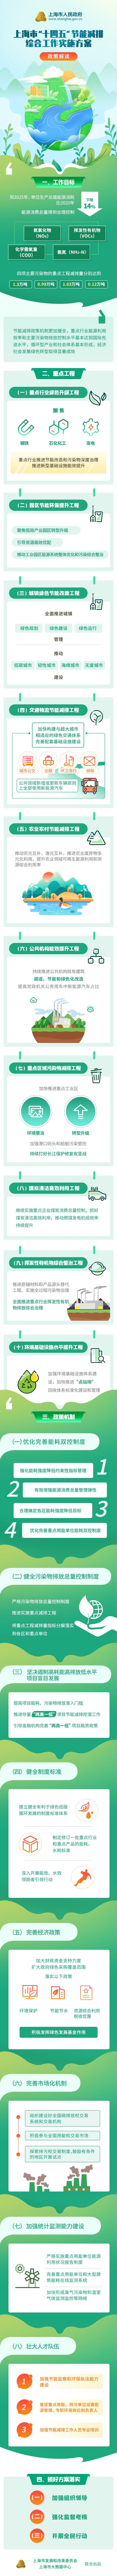 一图读懂《上海市“十四五”节能减排综合工作实施方案》.jpg